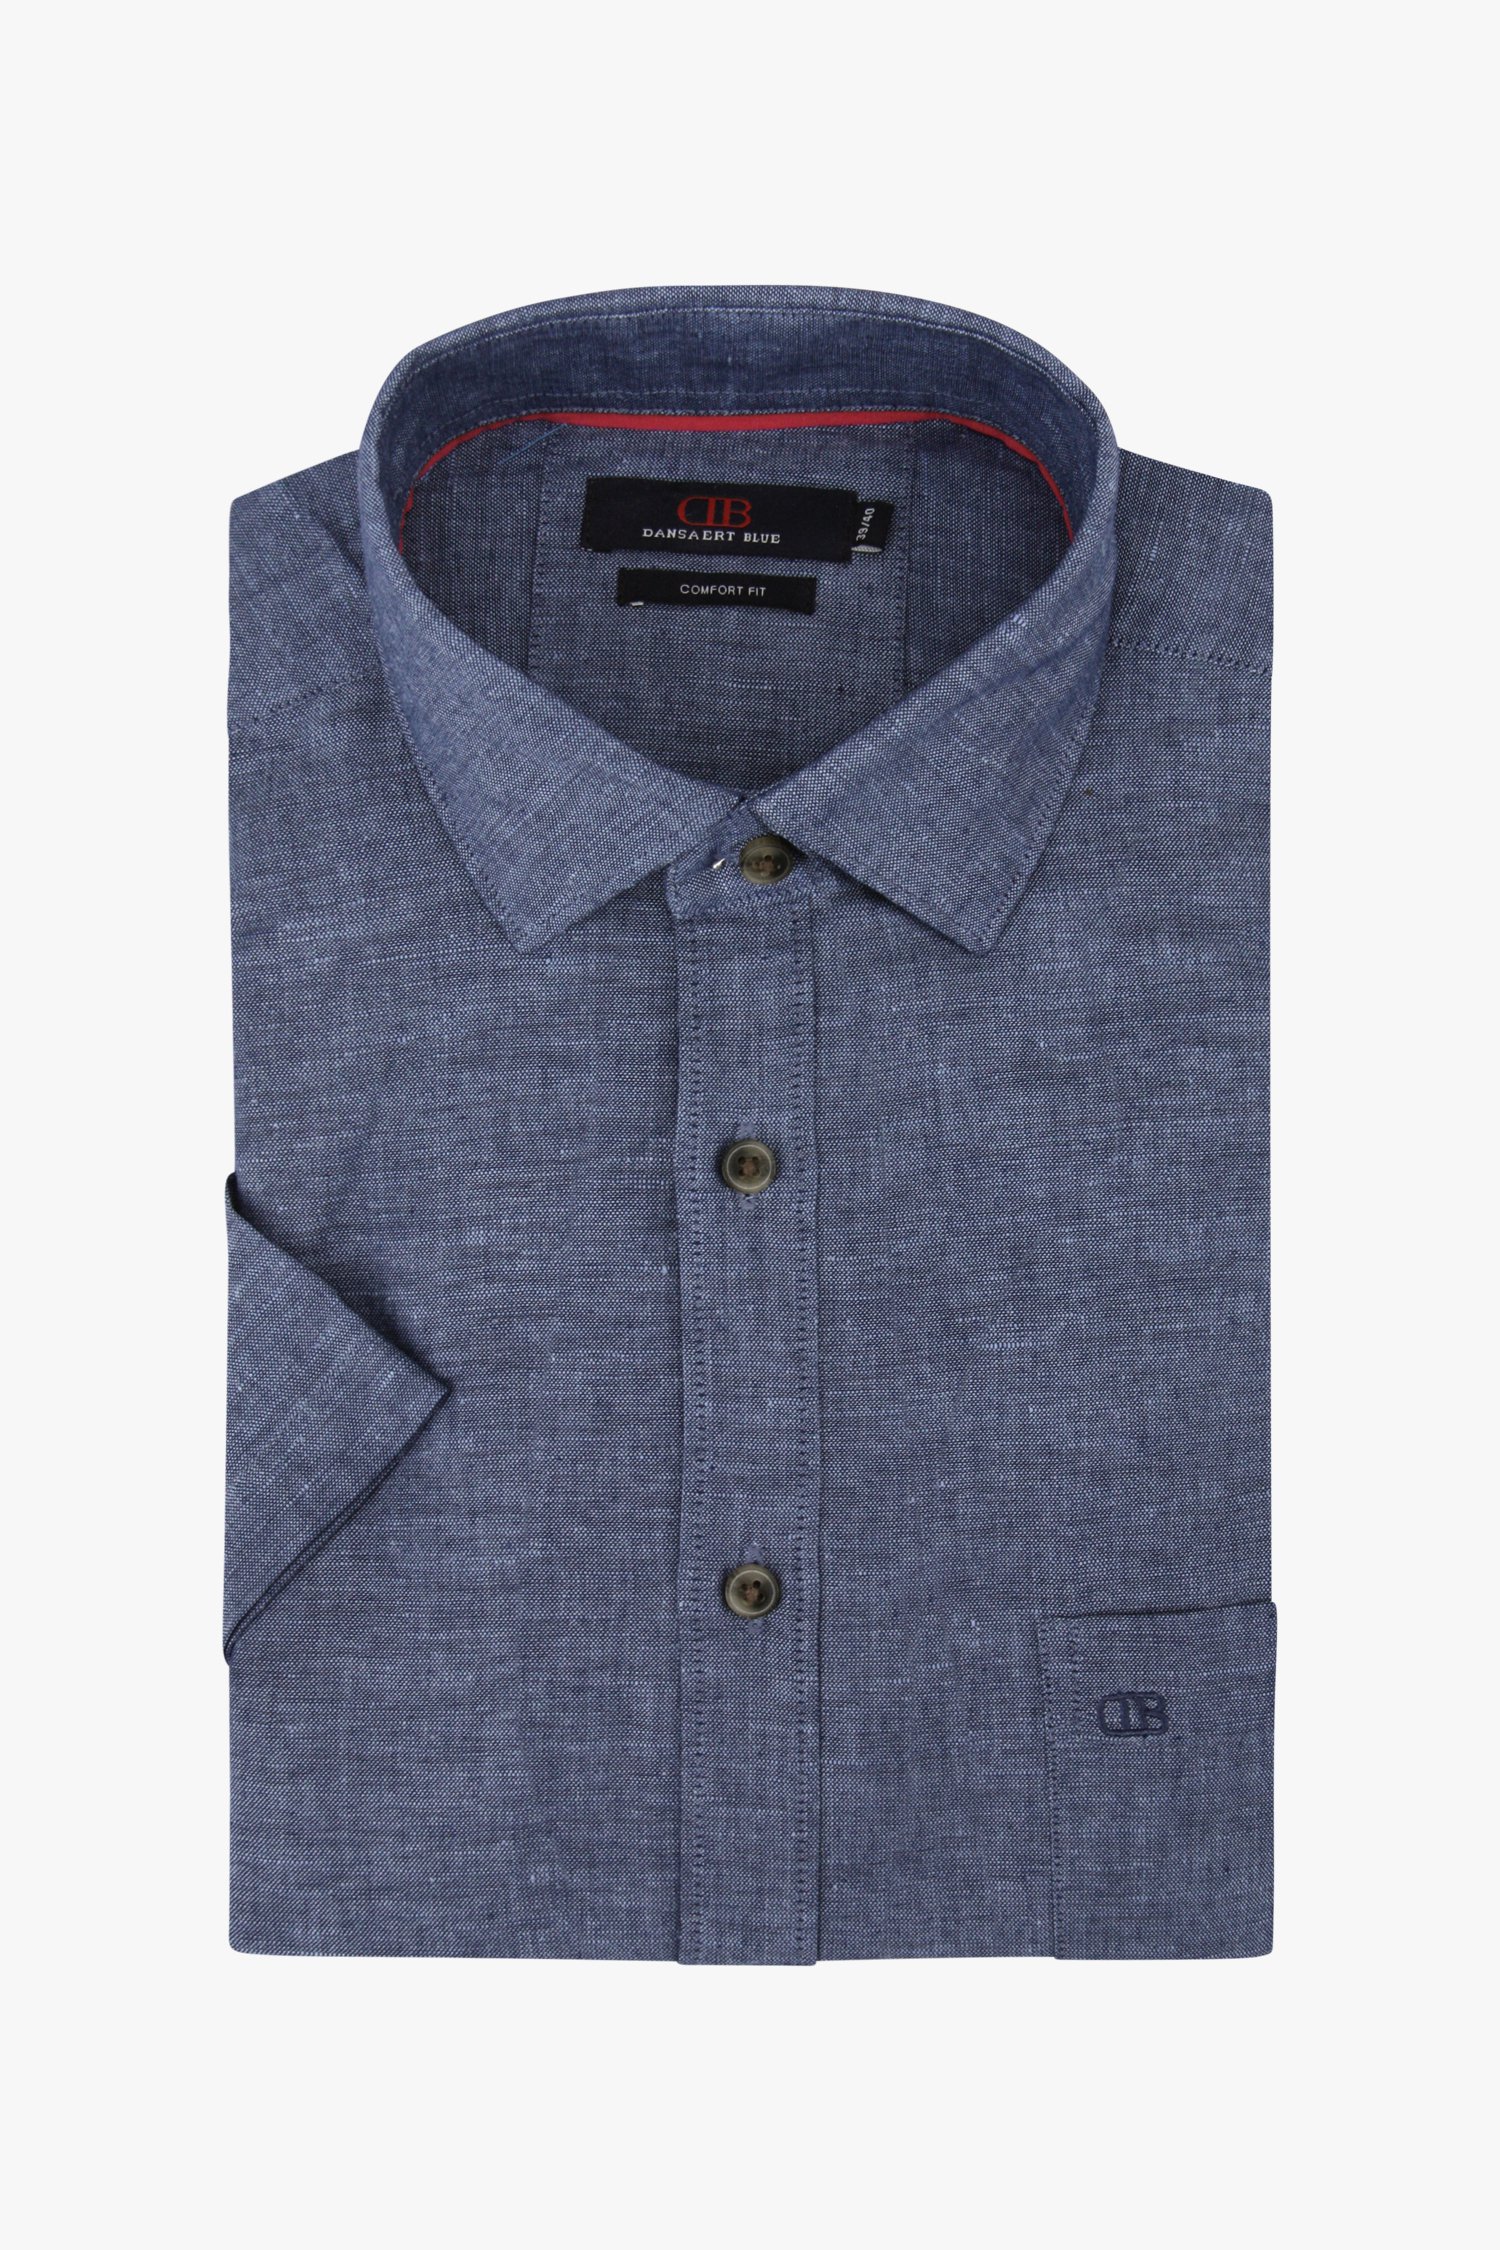 Donkerblauw hemd met linnen-look - comfort fit van Dansaert Blue voor Heren